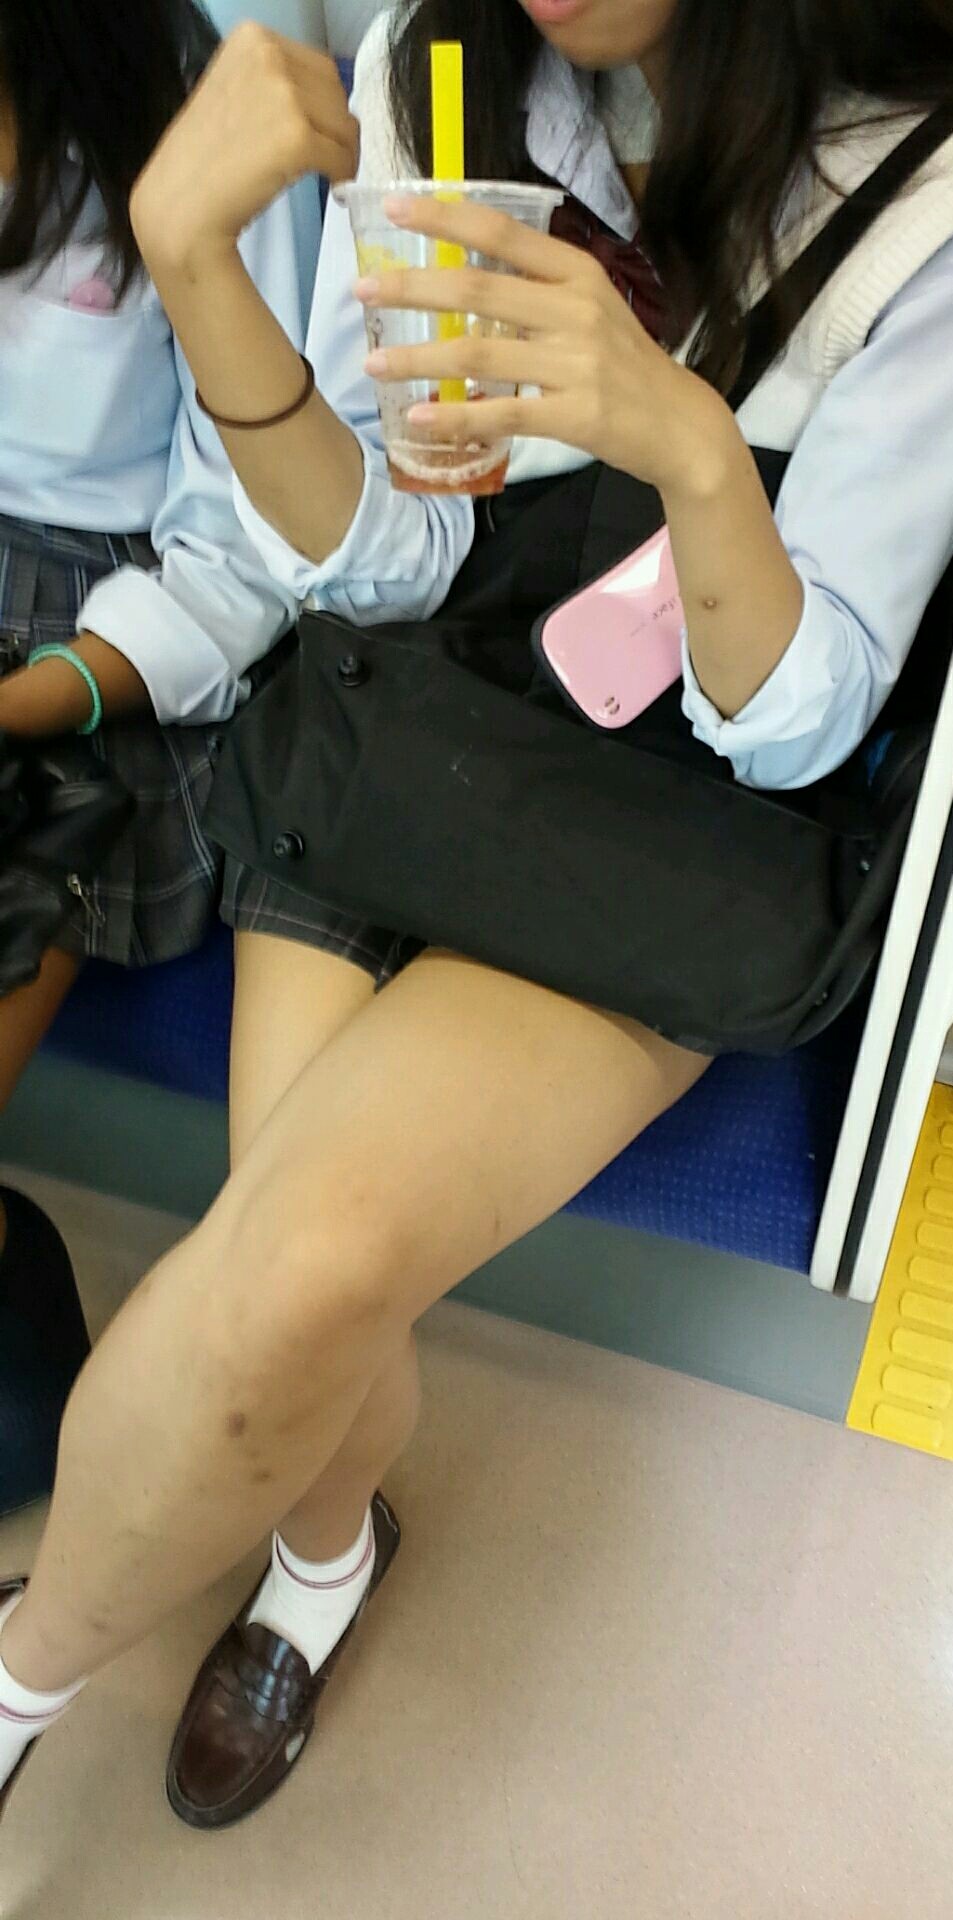 電車内盗撮 : 可愛子ちゃんたちの太ももエロ画像！ (47枚)018